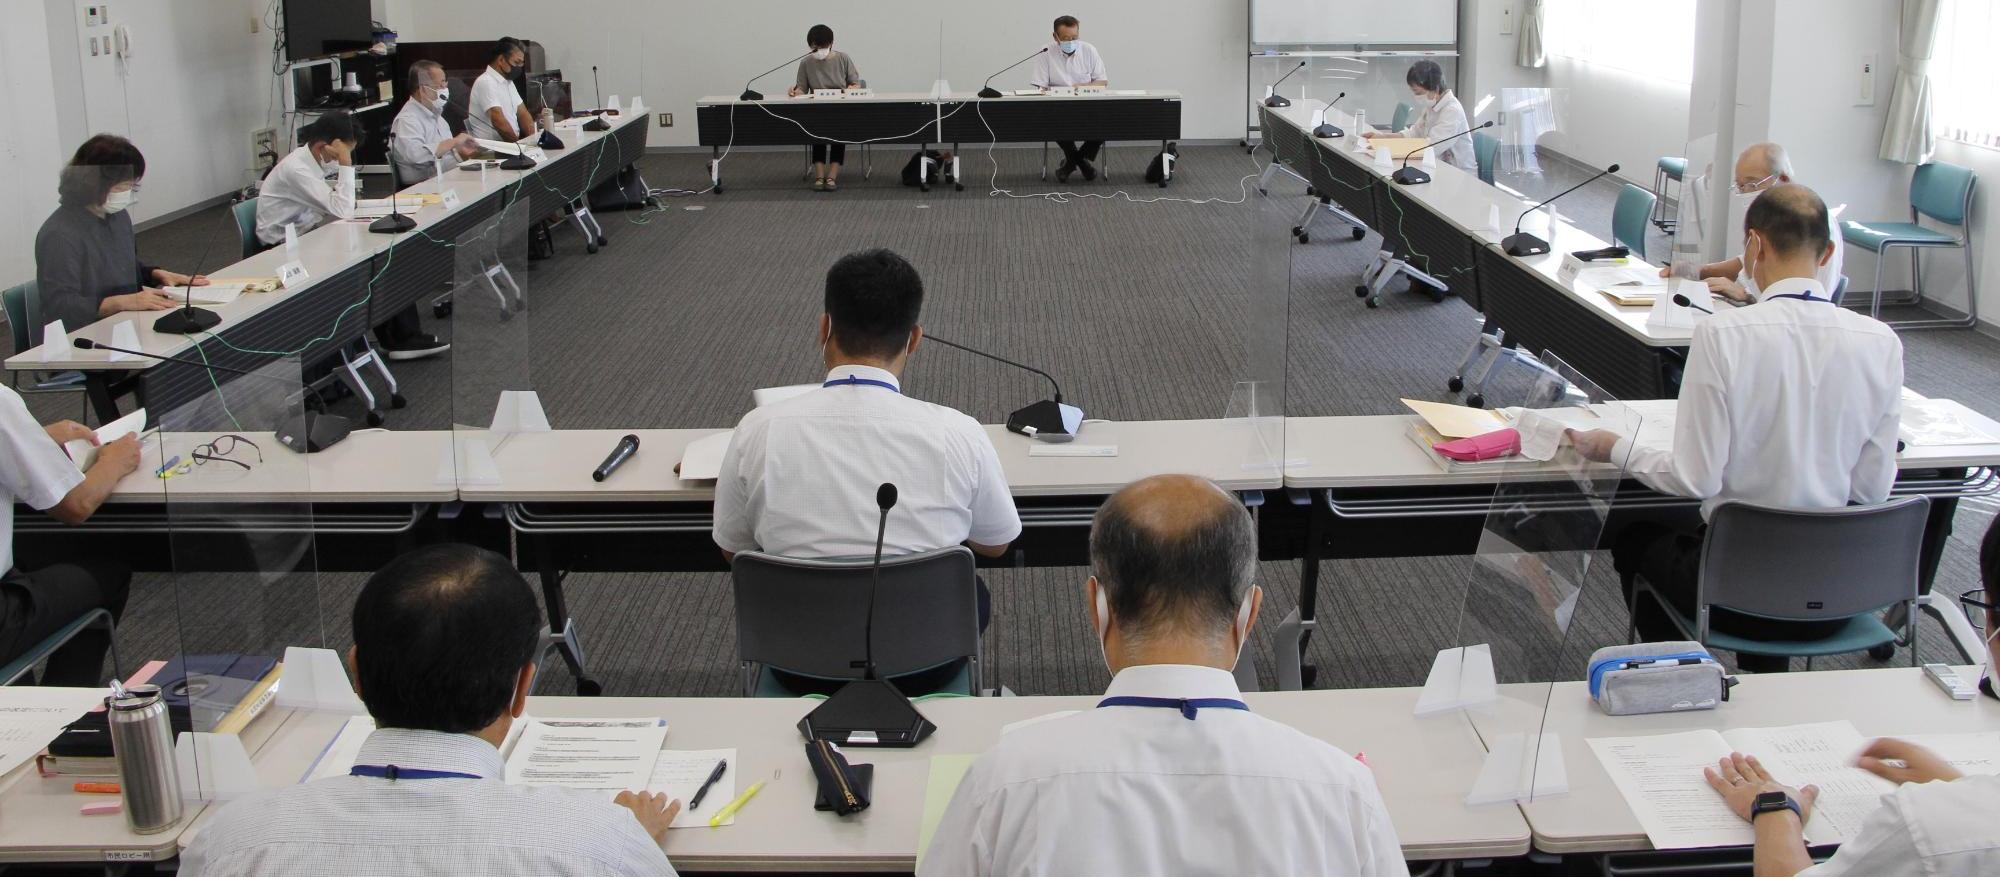 第1回宍粟市公共料金審議会が開催され、委員や職員らが机に座って議論をしている写真